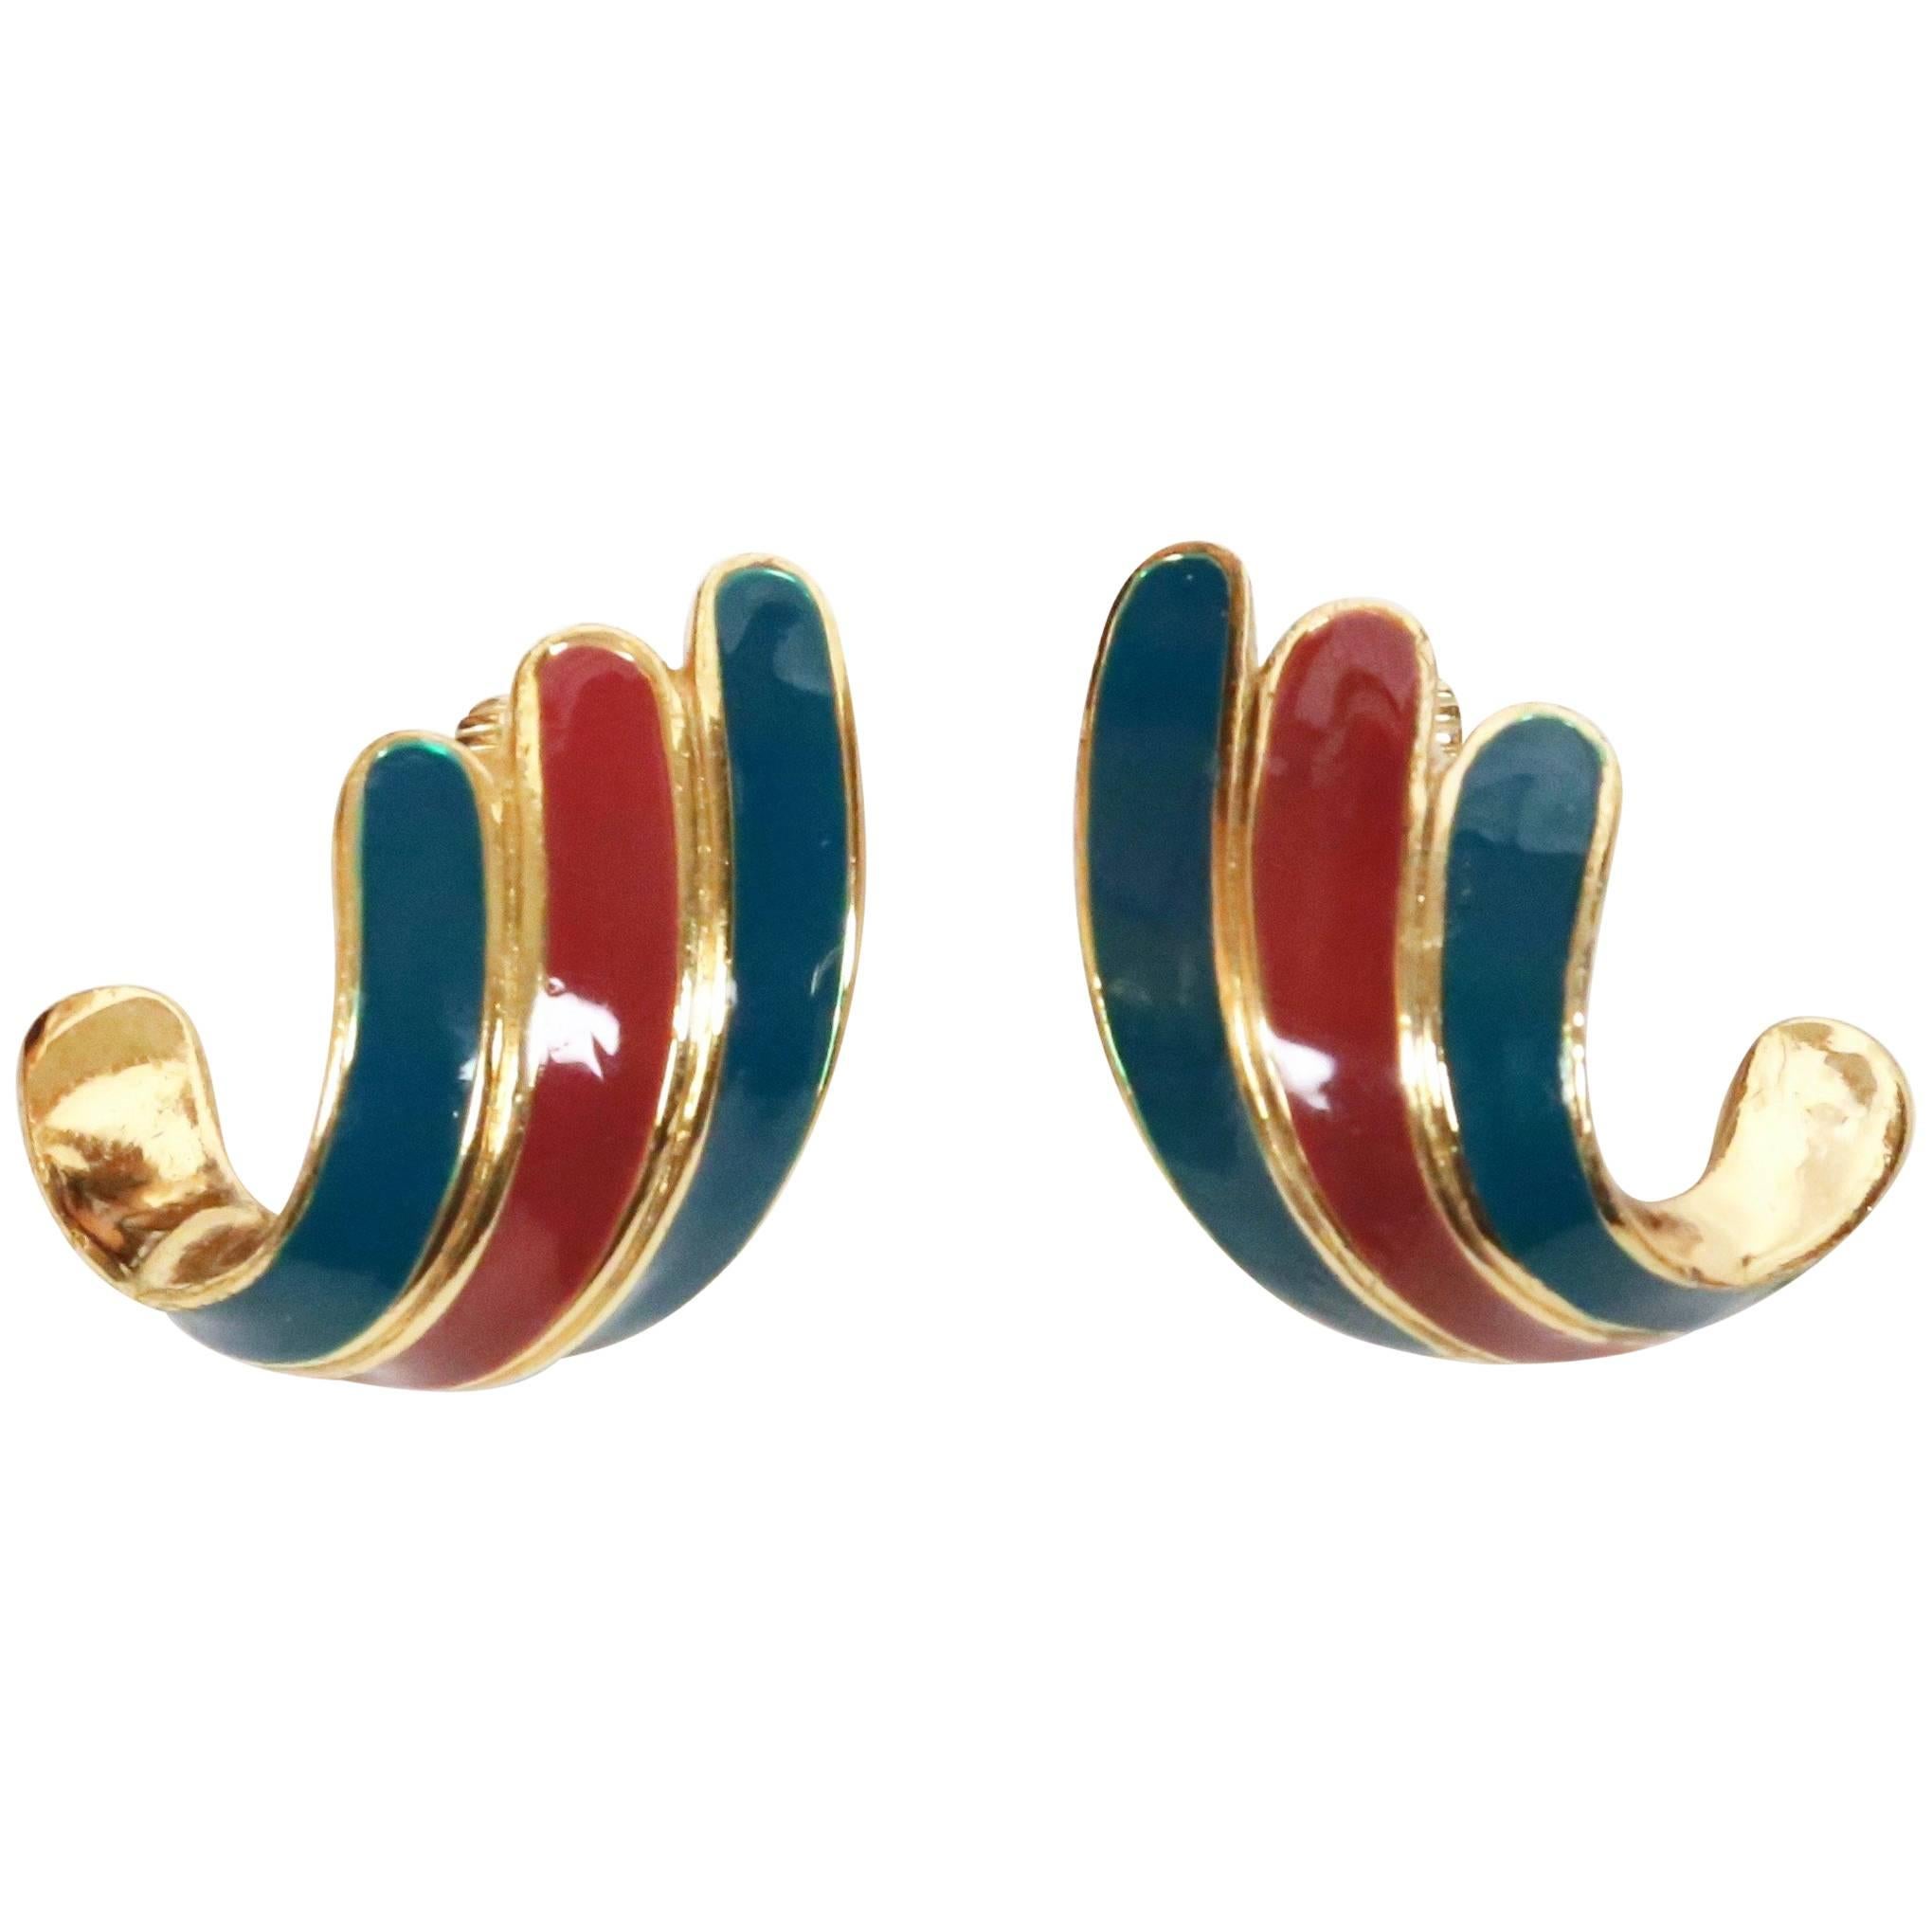 1970's LANVIN enameled and gilt earrings